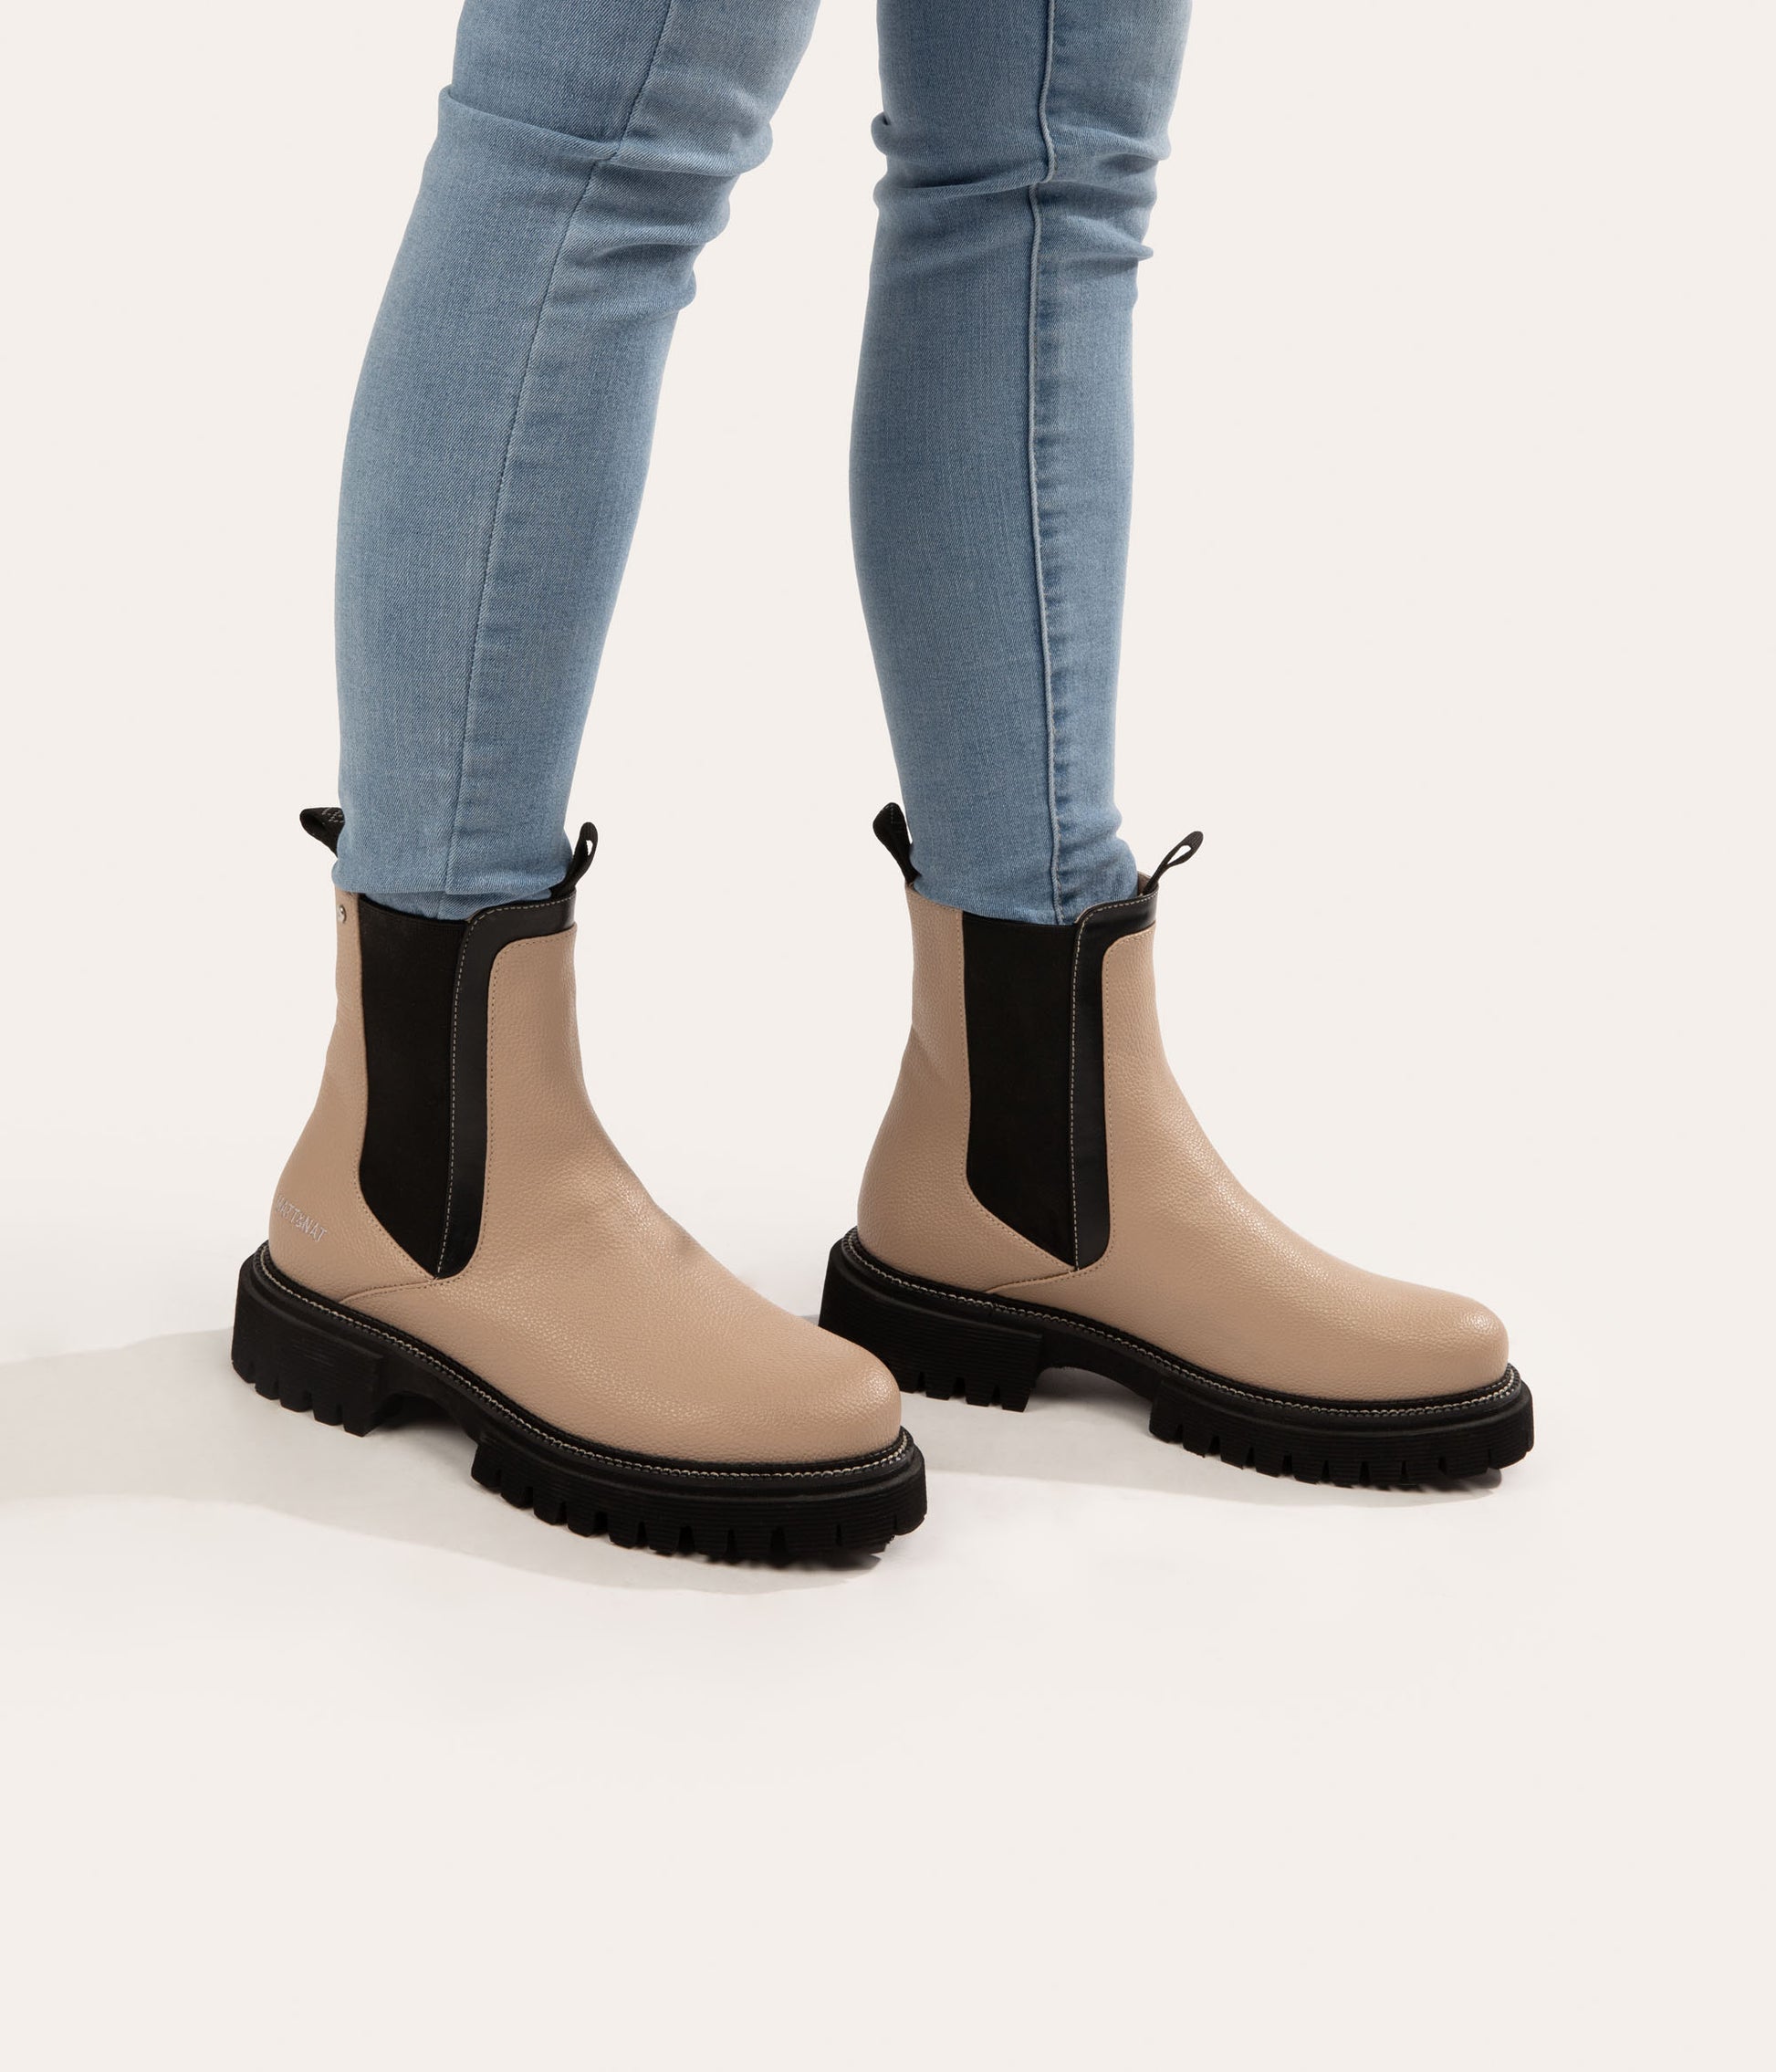 ZUKE Women's Vegan Chelsea Boots | Color: Black - variant::black